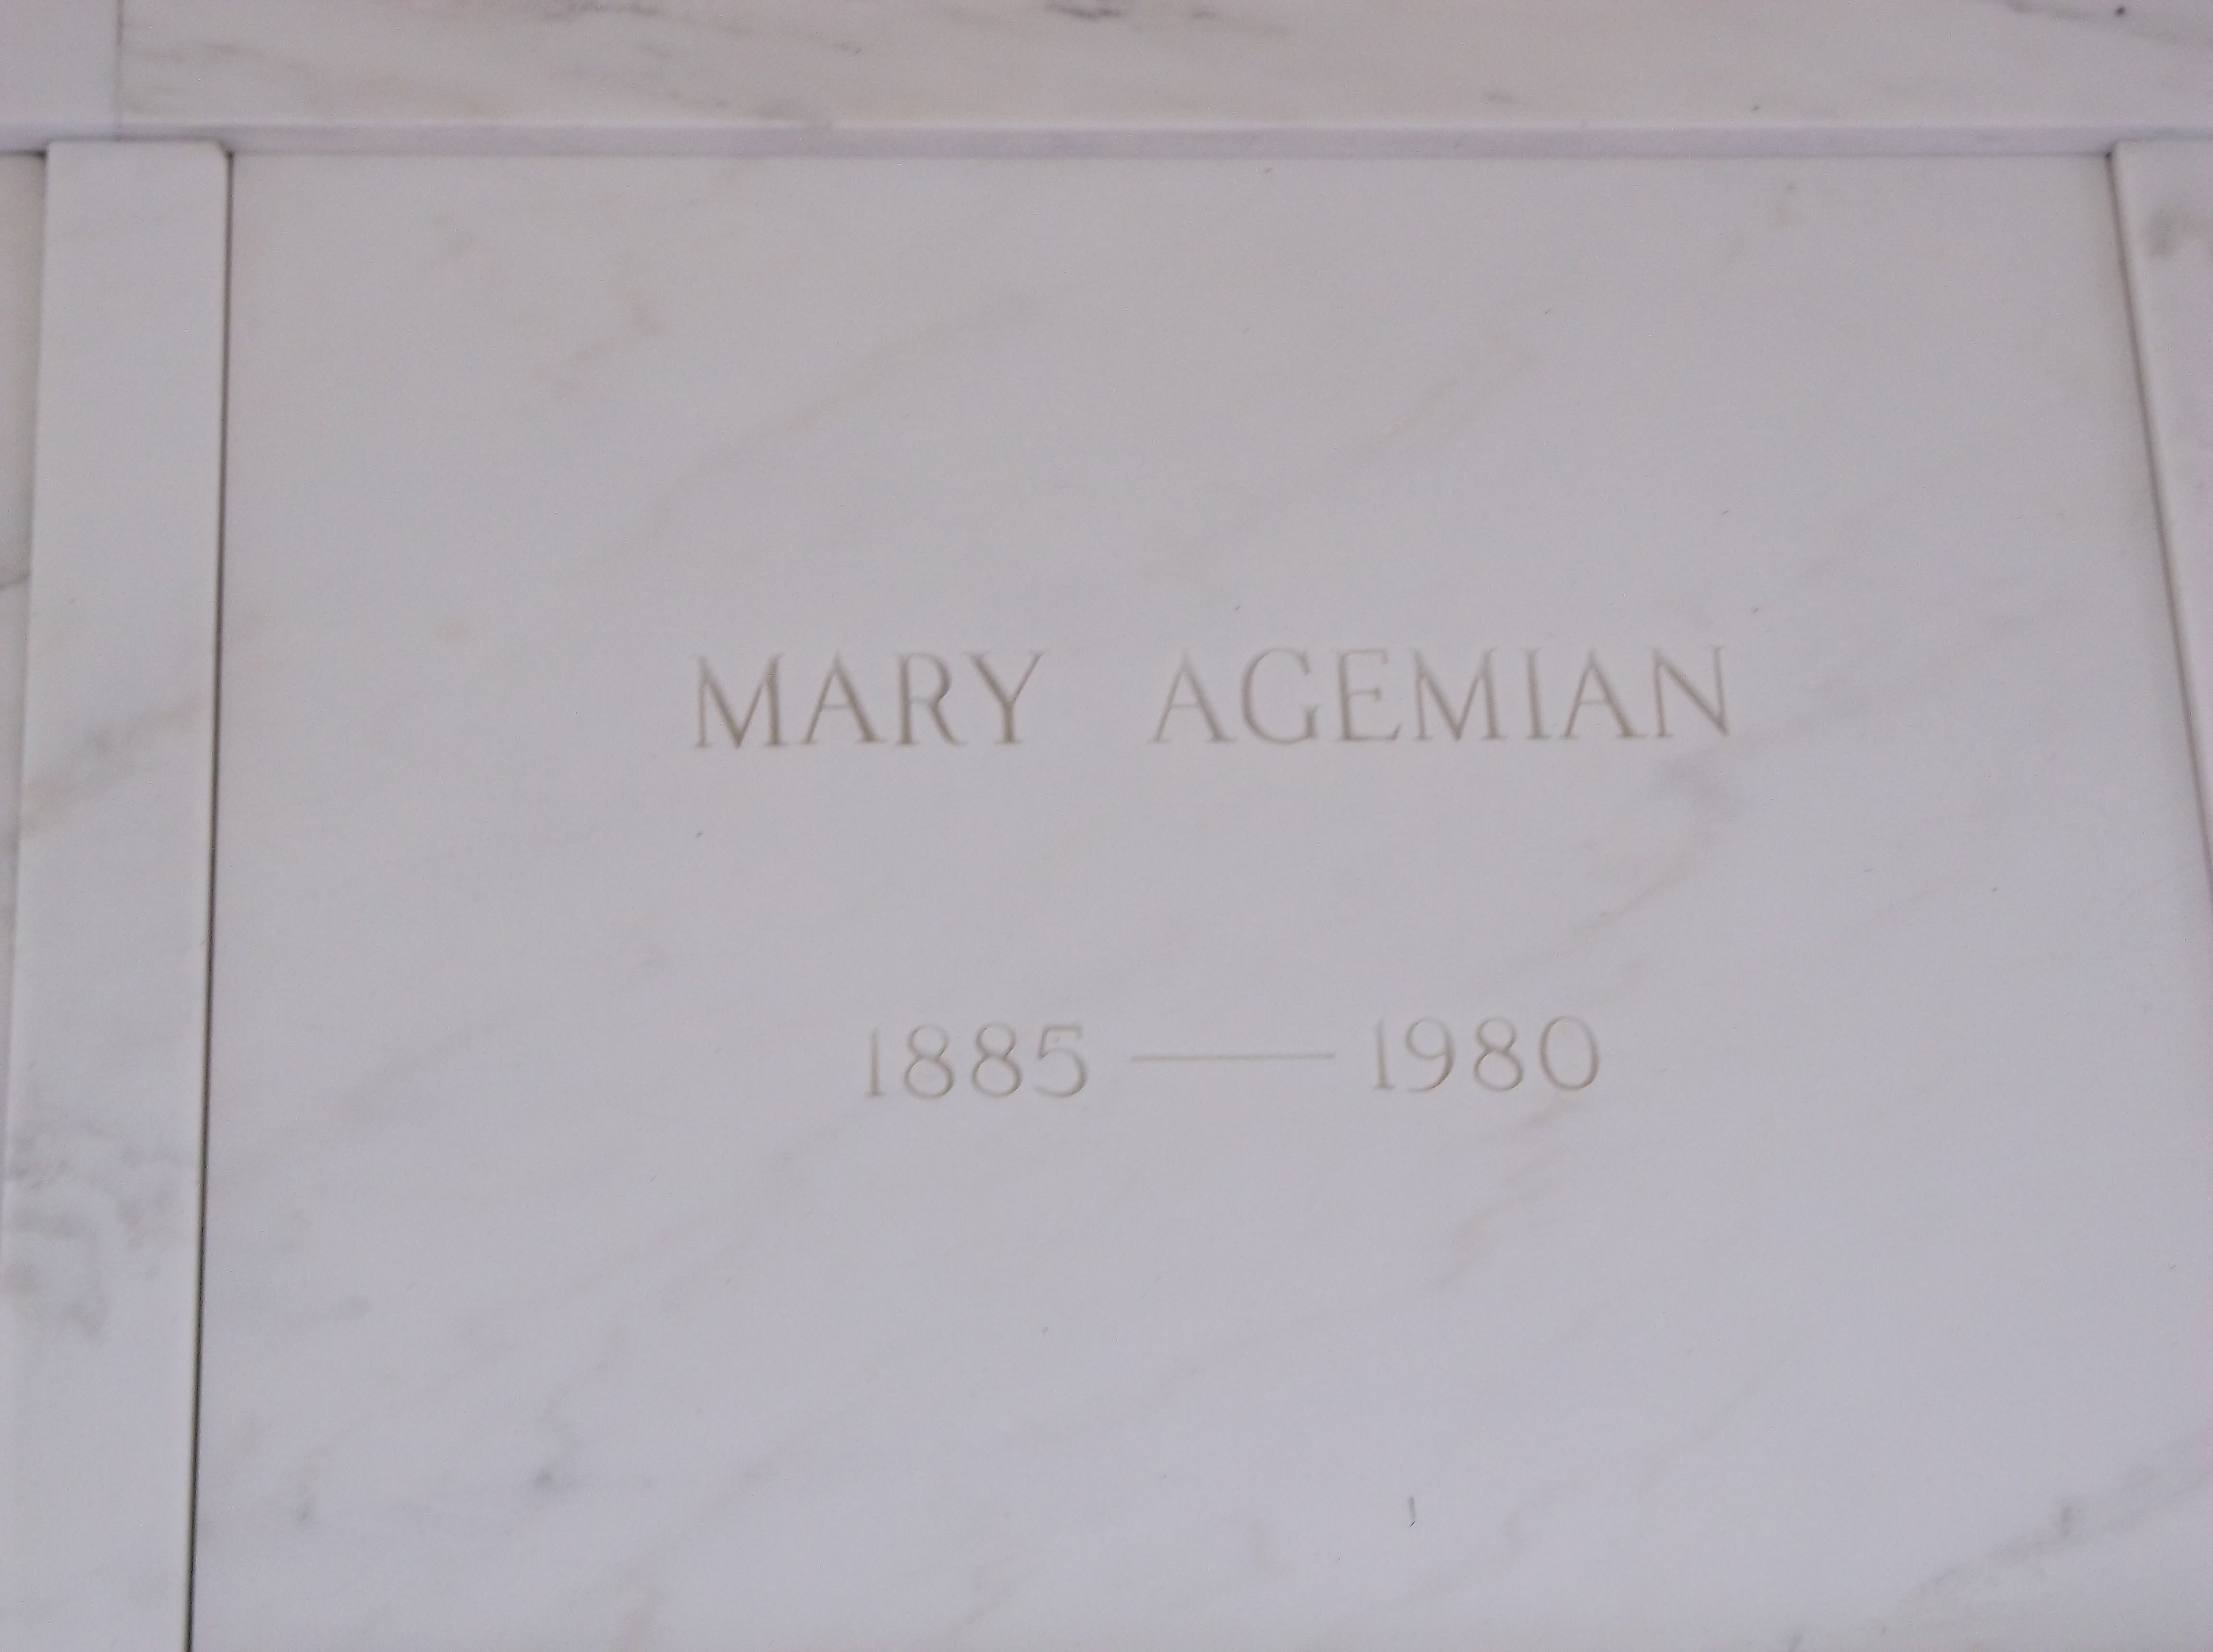 Mary Agemian